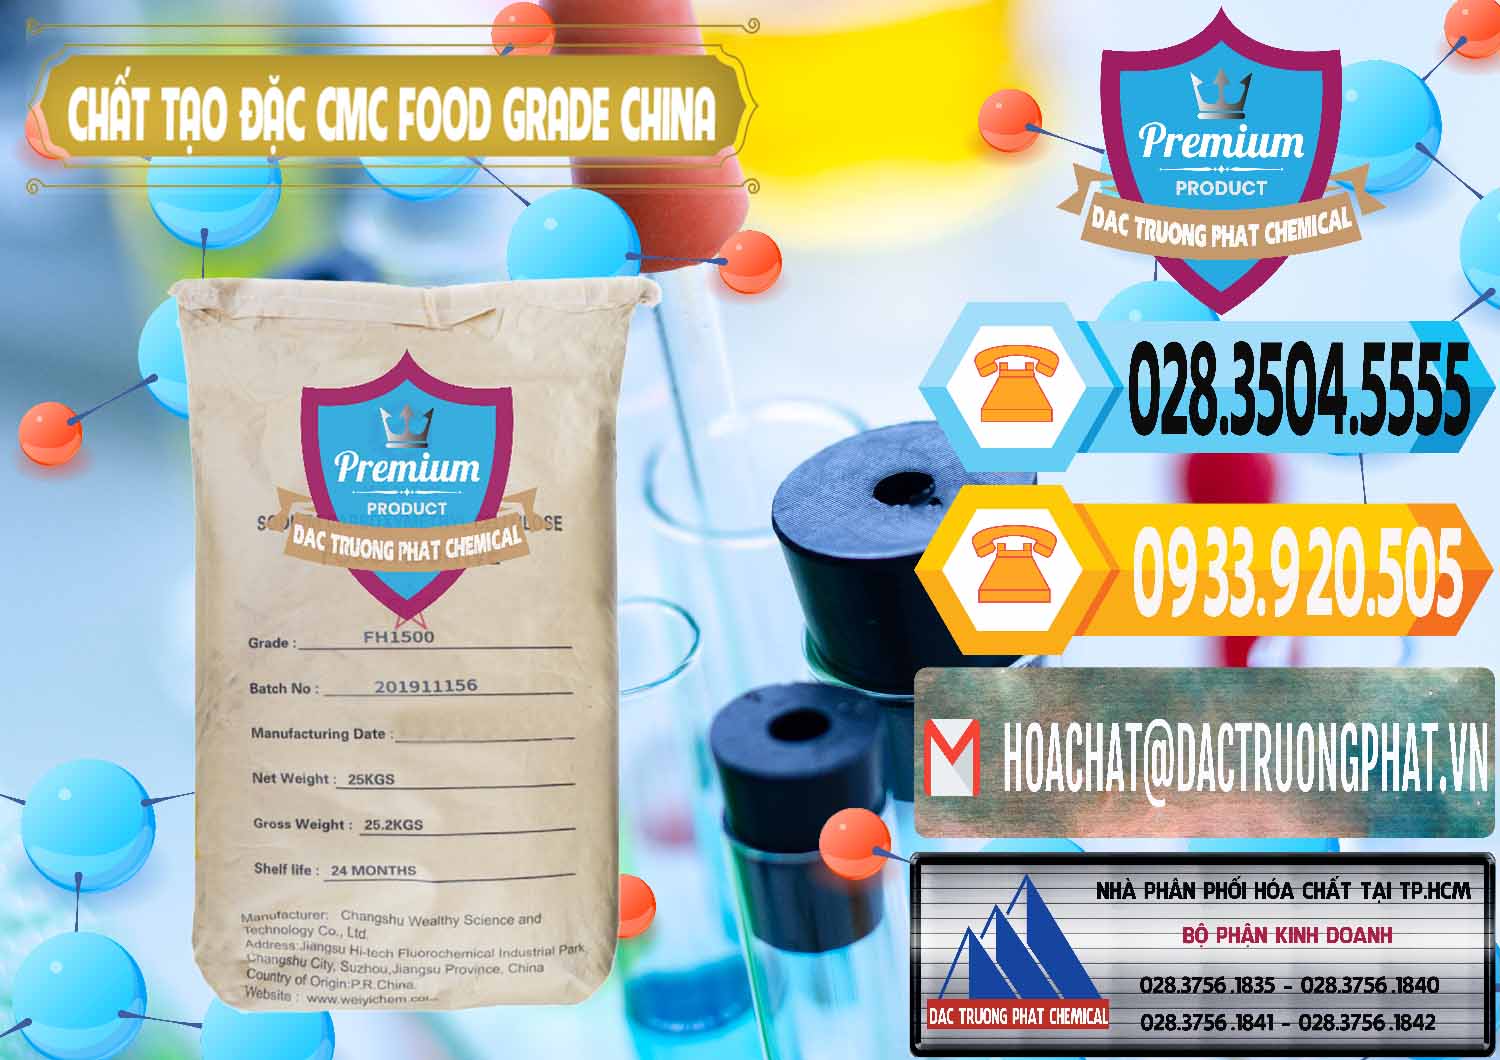 Chuyên nhập khẩu ( bán ) Chất Tạo Đặc CMC Wealthy Food Grade Trung Quốc China - 0426 - Công ty phân phối - bán hóa chất tại TP.HCM - hoachattayrua.net